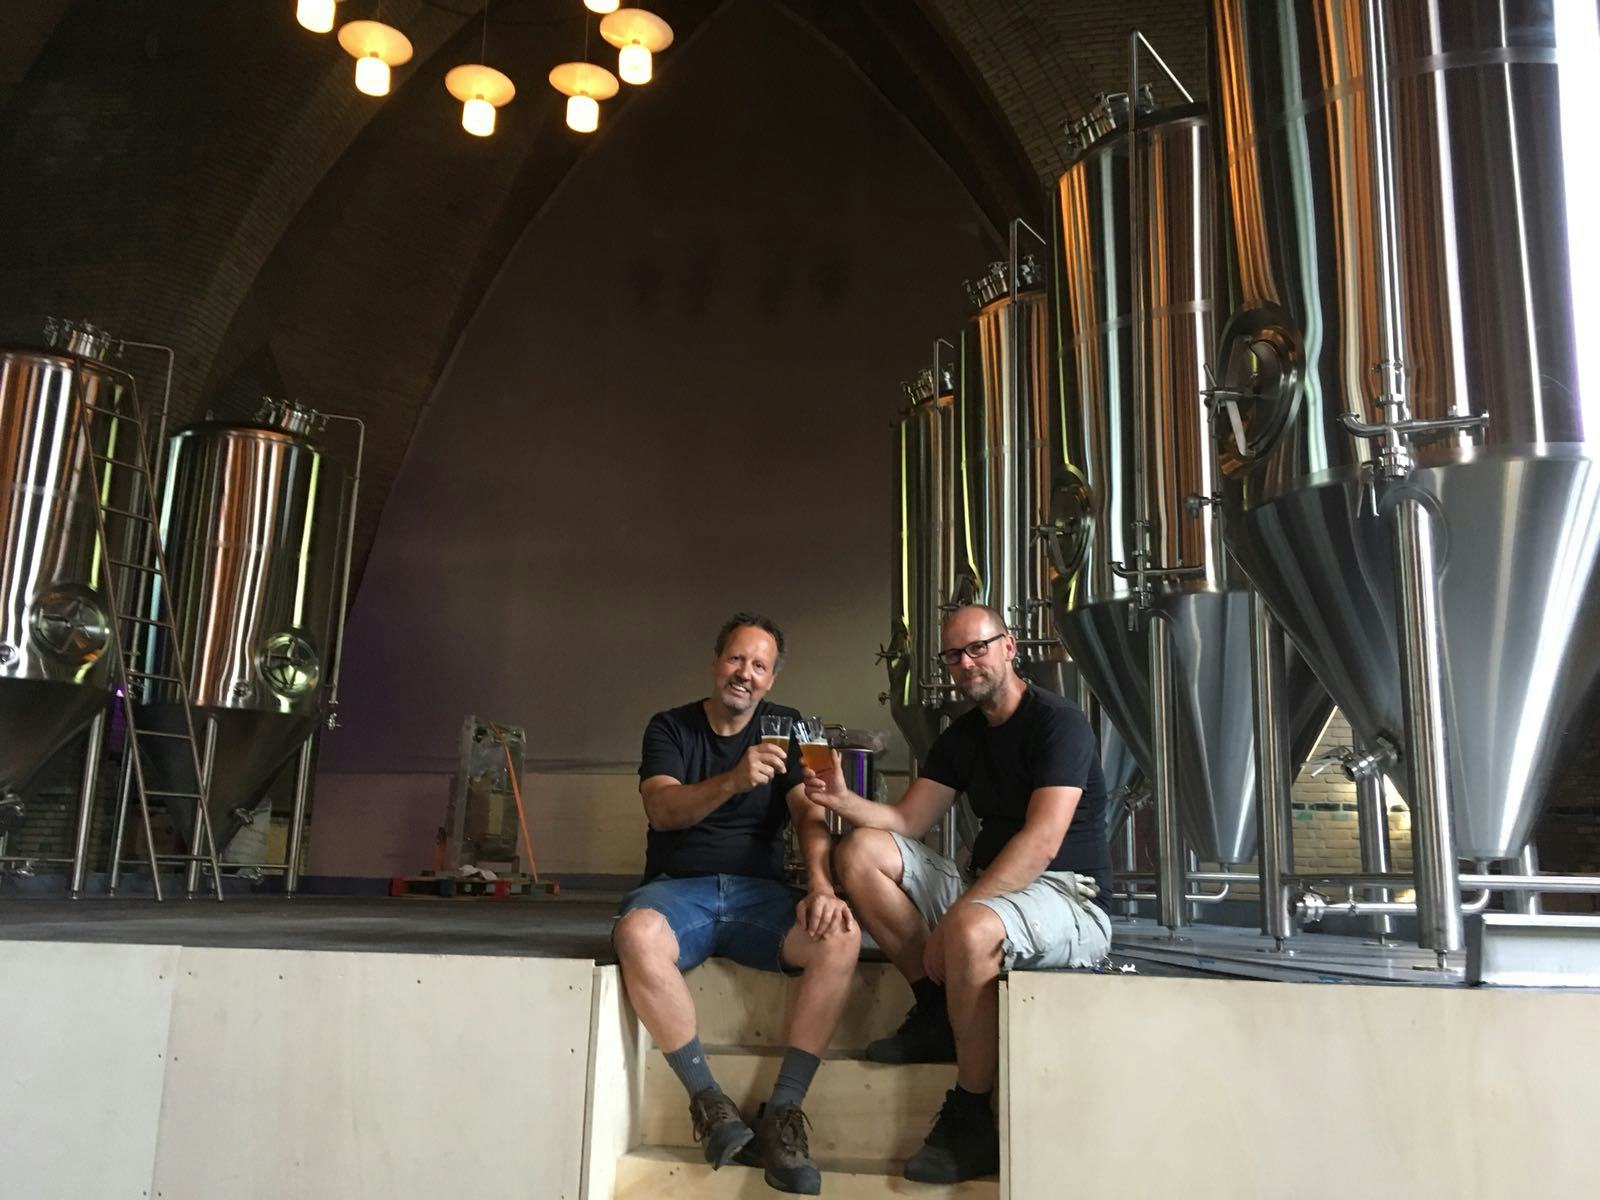 Naeckte Brouwers opent deuren brouwerij en proeflokaal